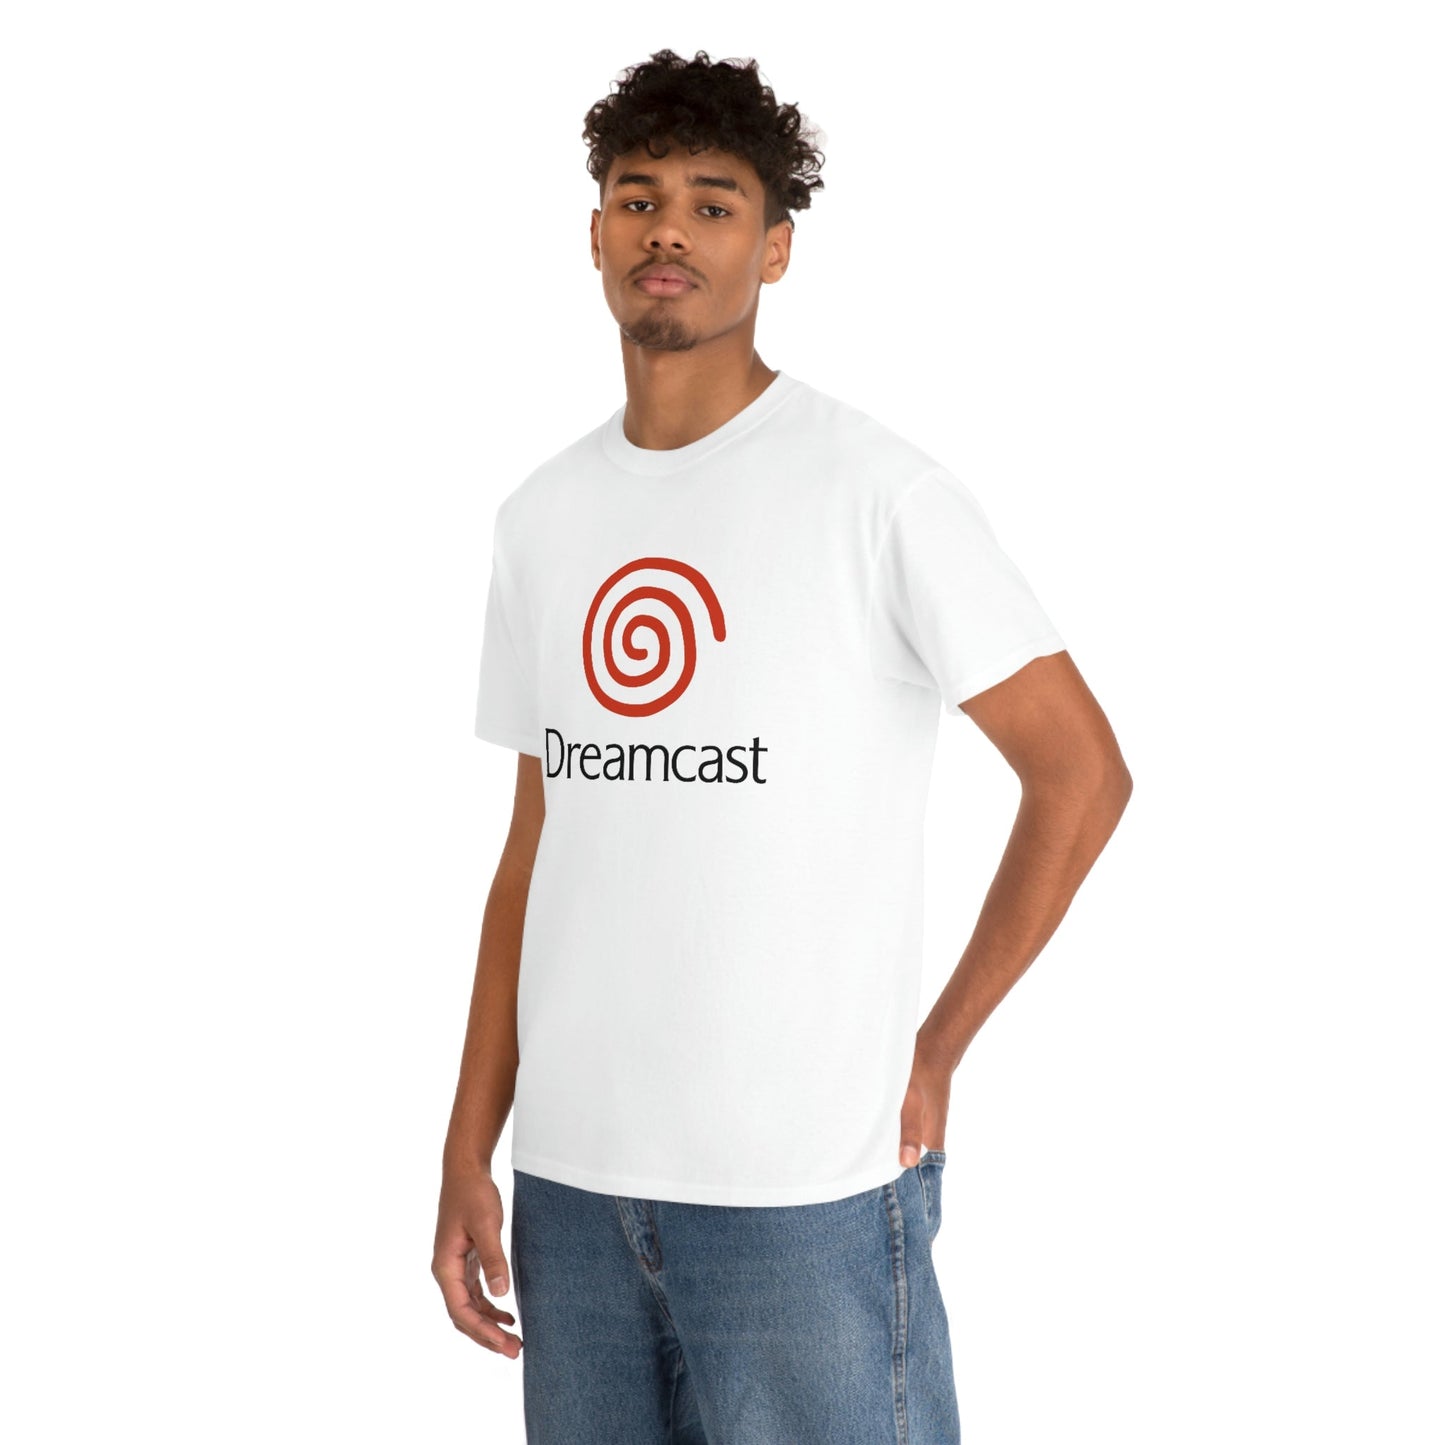 Sega Dreamcast T-Shirt - RetroTeeShop